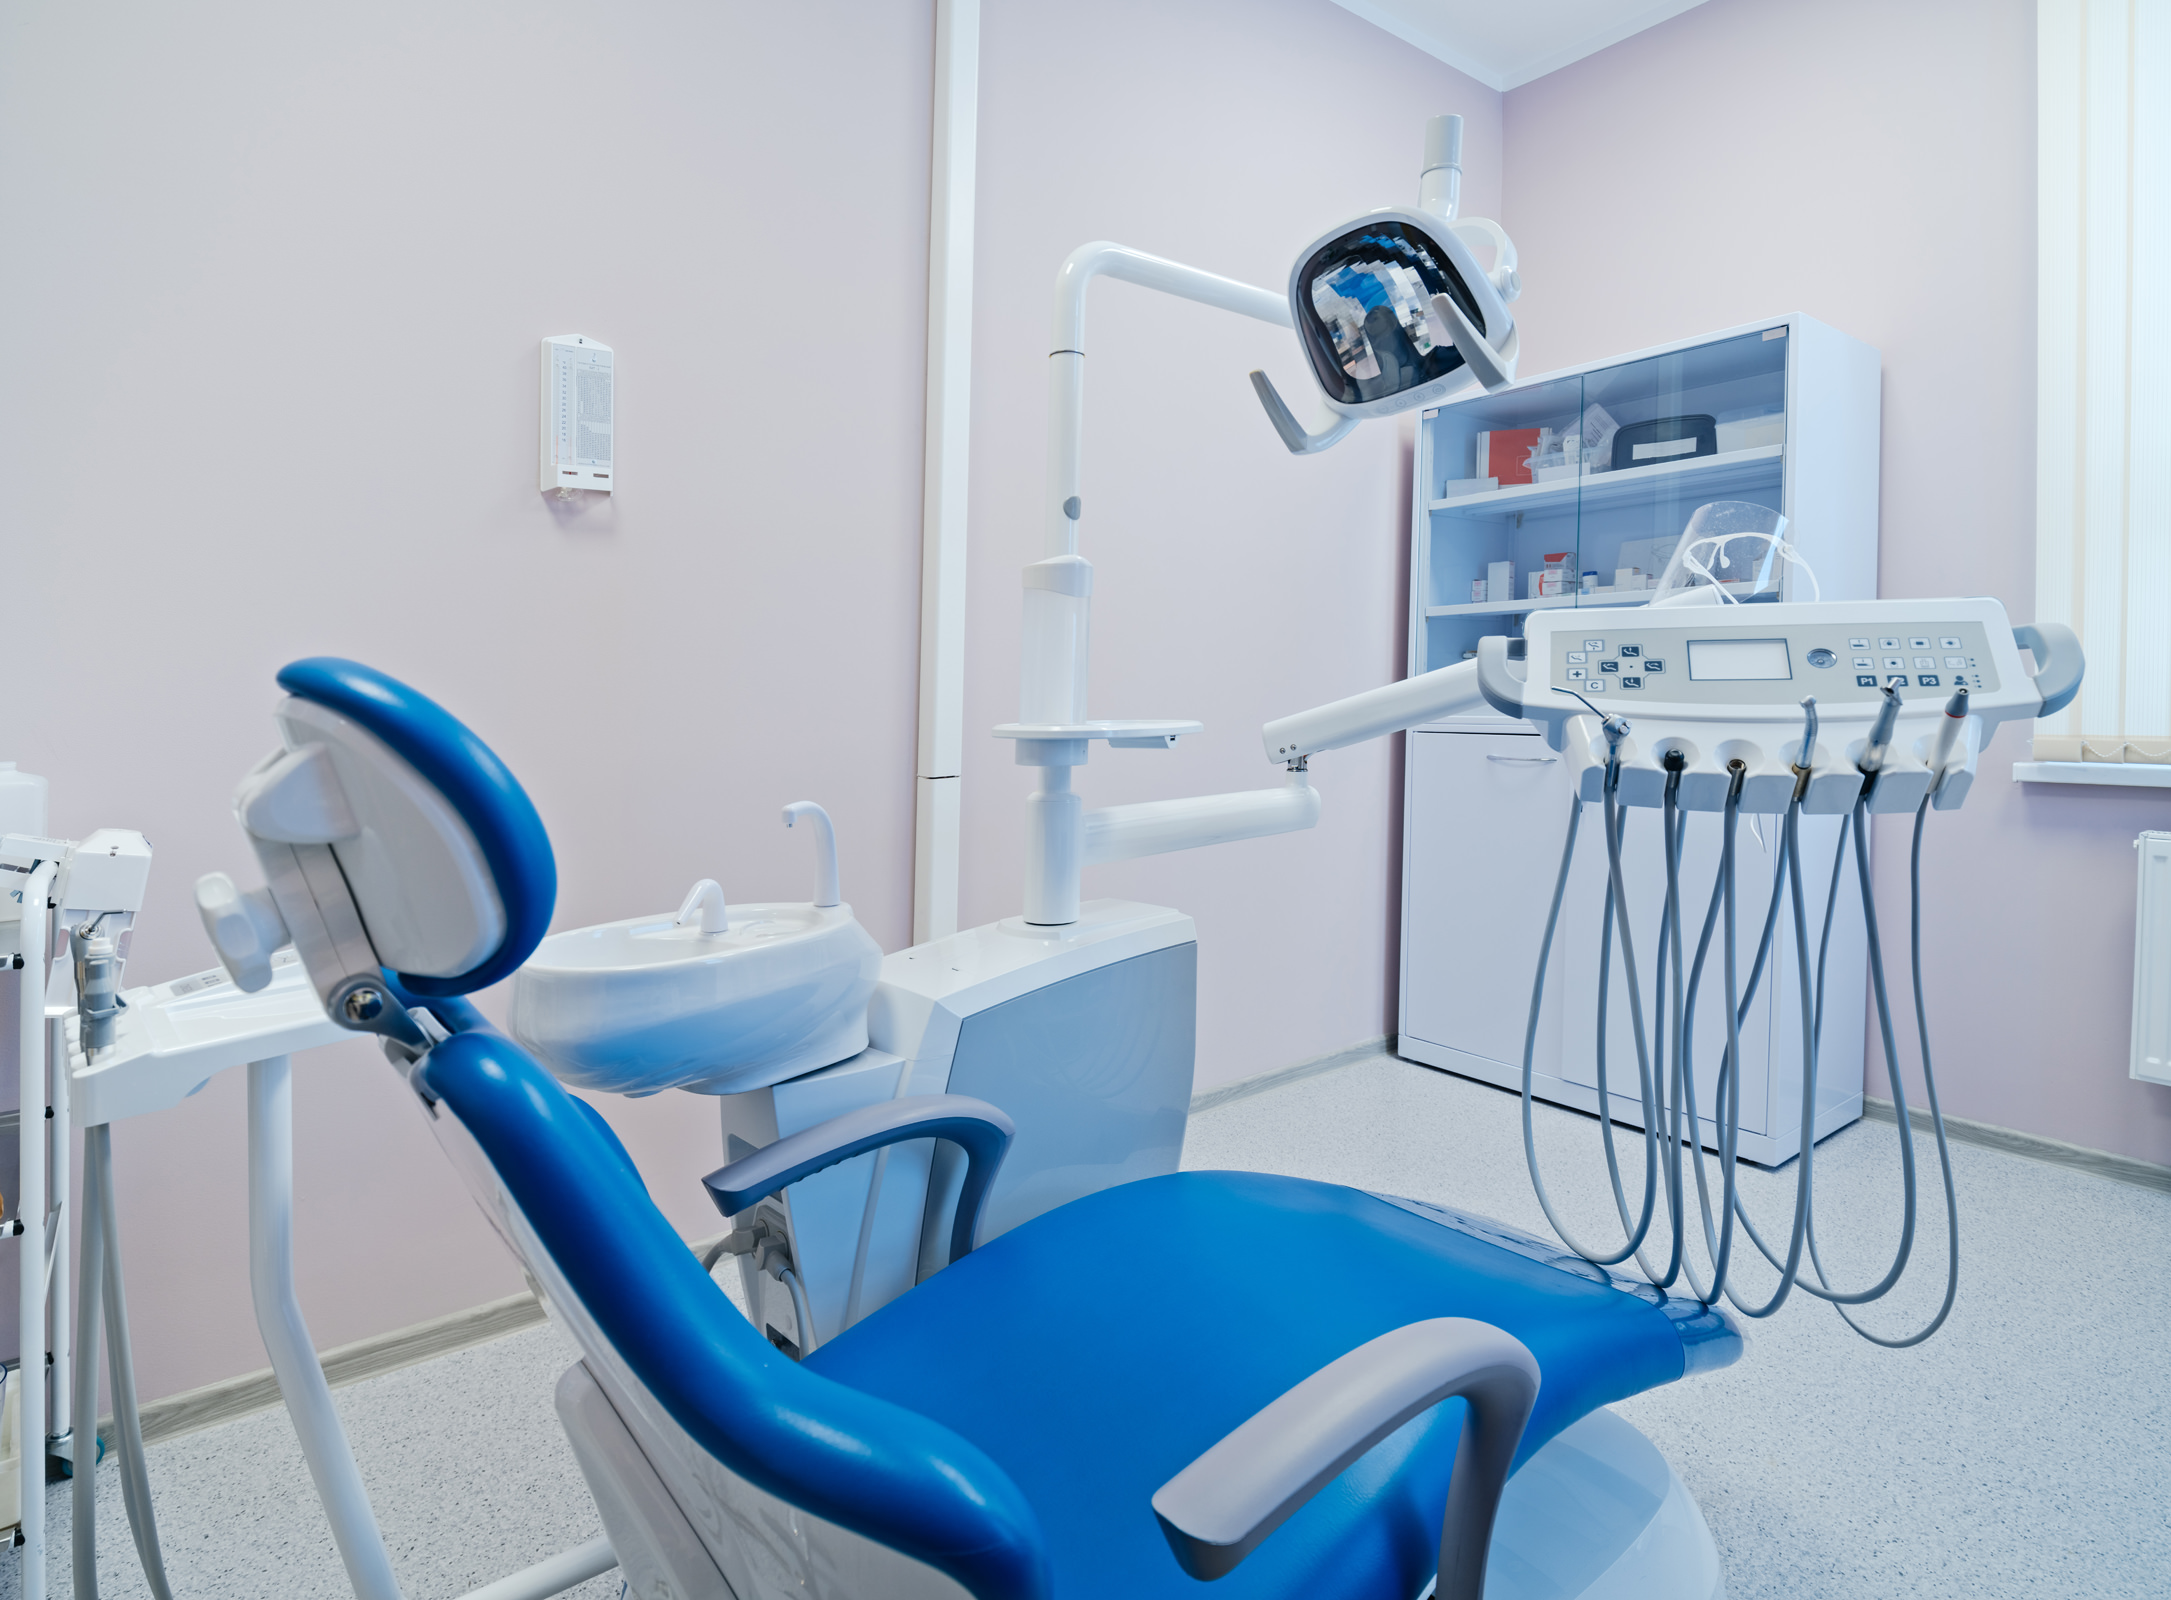 Профессиональная интерьерная съёмка стоматологического кабинета в поликлинике Минска, кресло пациента с бур-машиной и лекарствами в шкафу